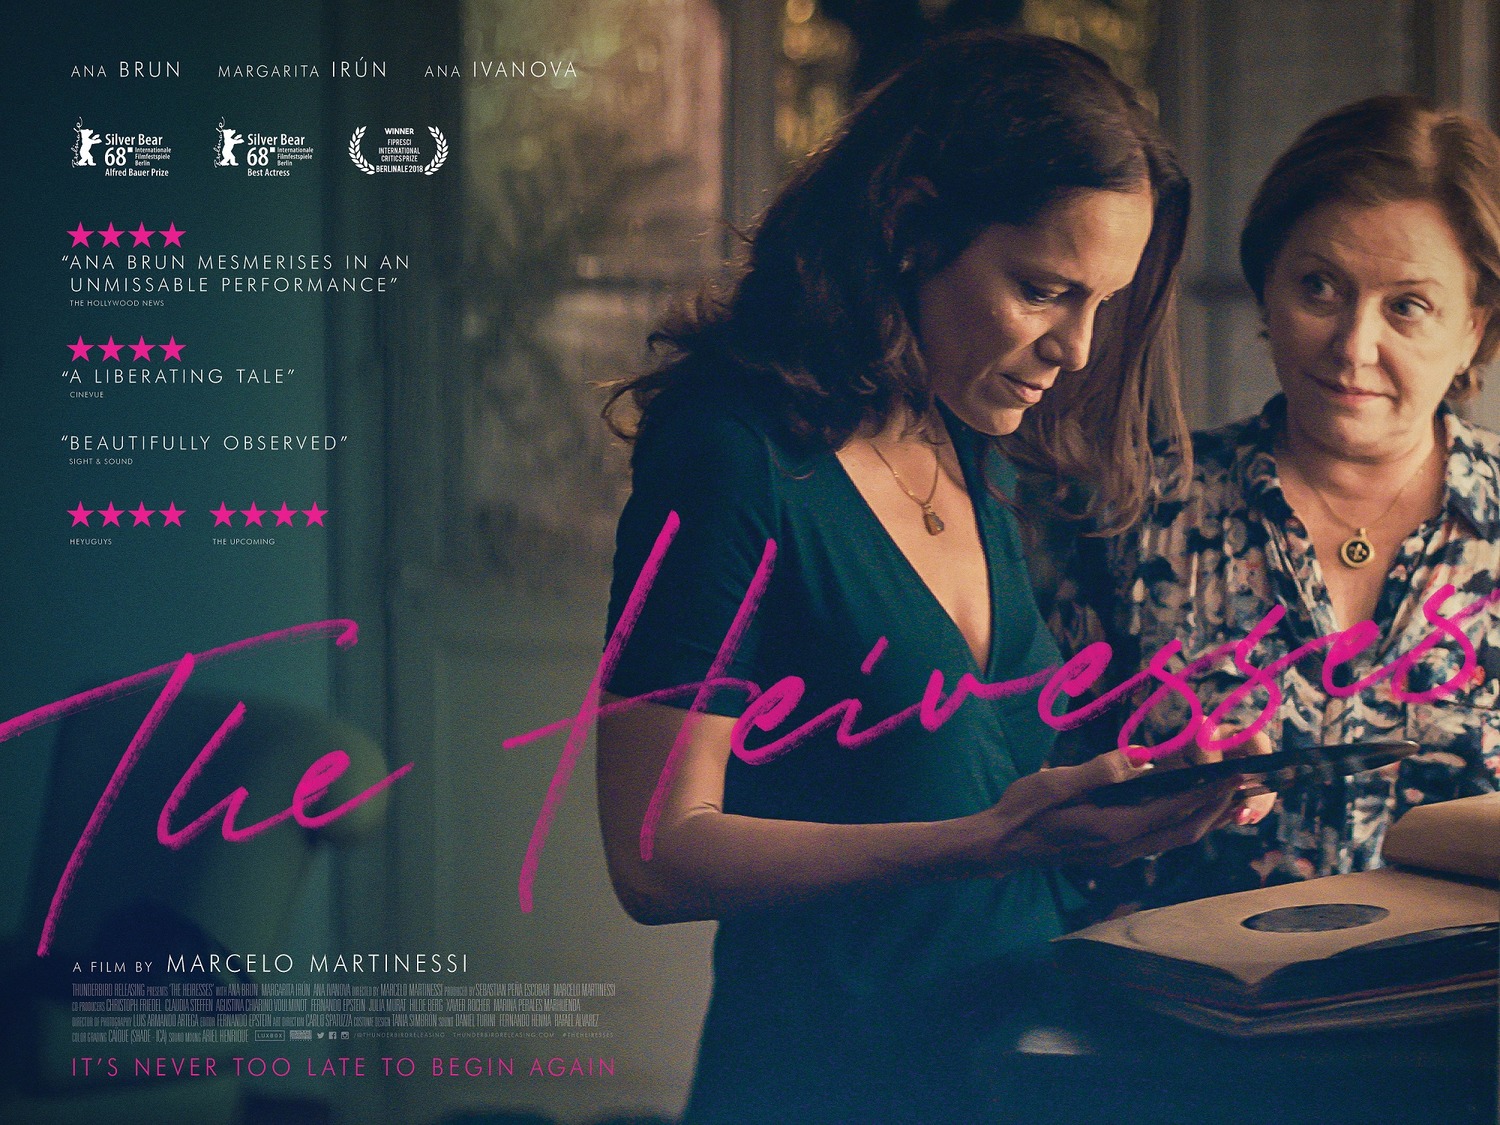 Las herederas (#2 of 4): Extra Large Movie Poster Image - IMP Awards